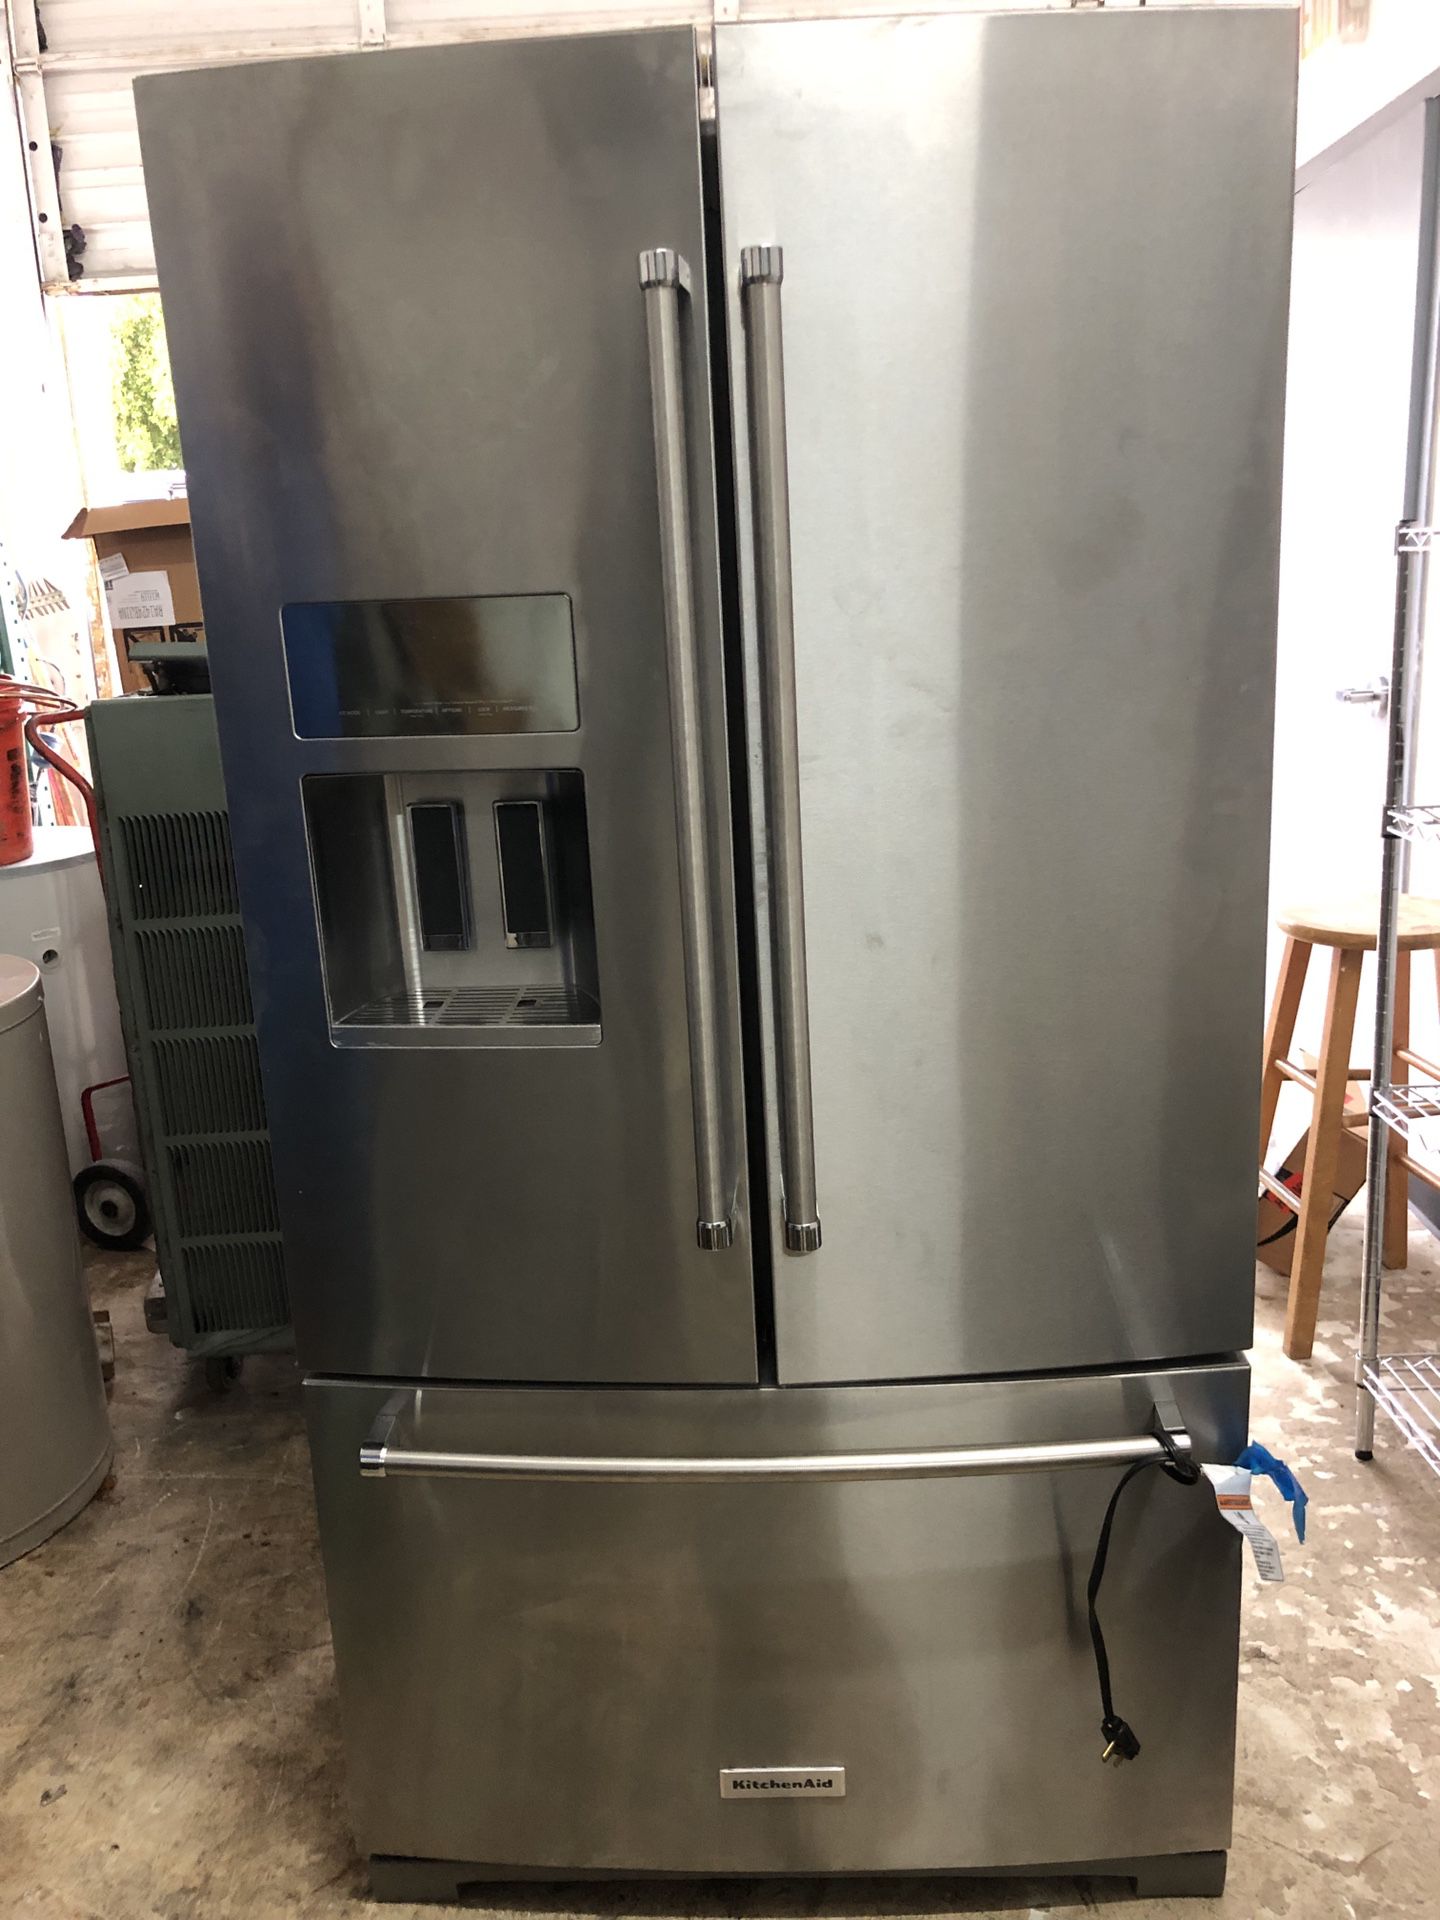 Kitchenaid-French door refrigerator